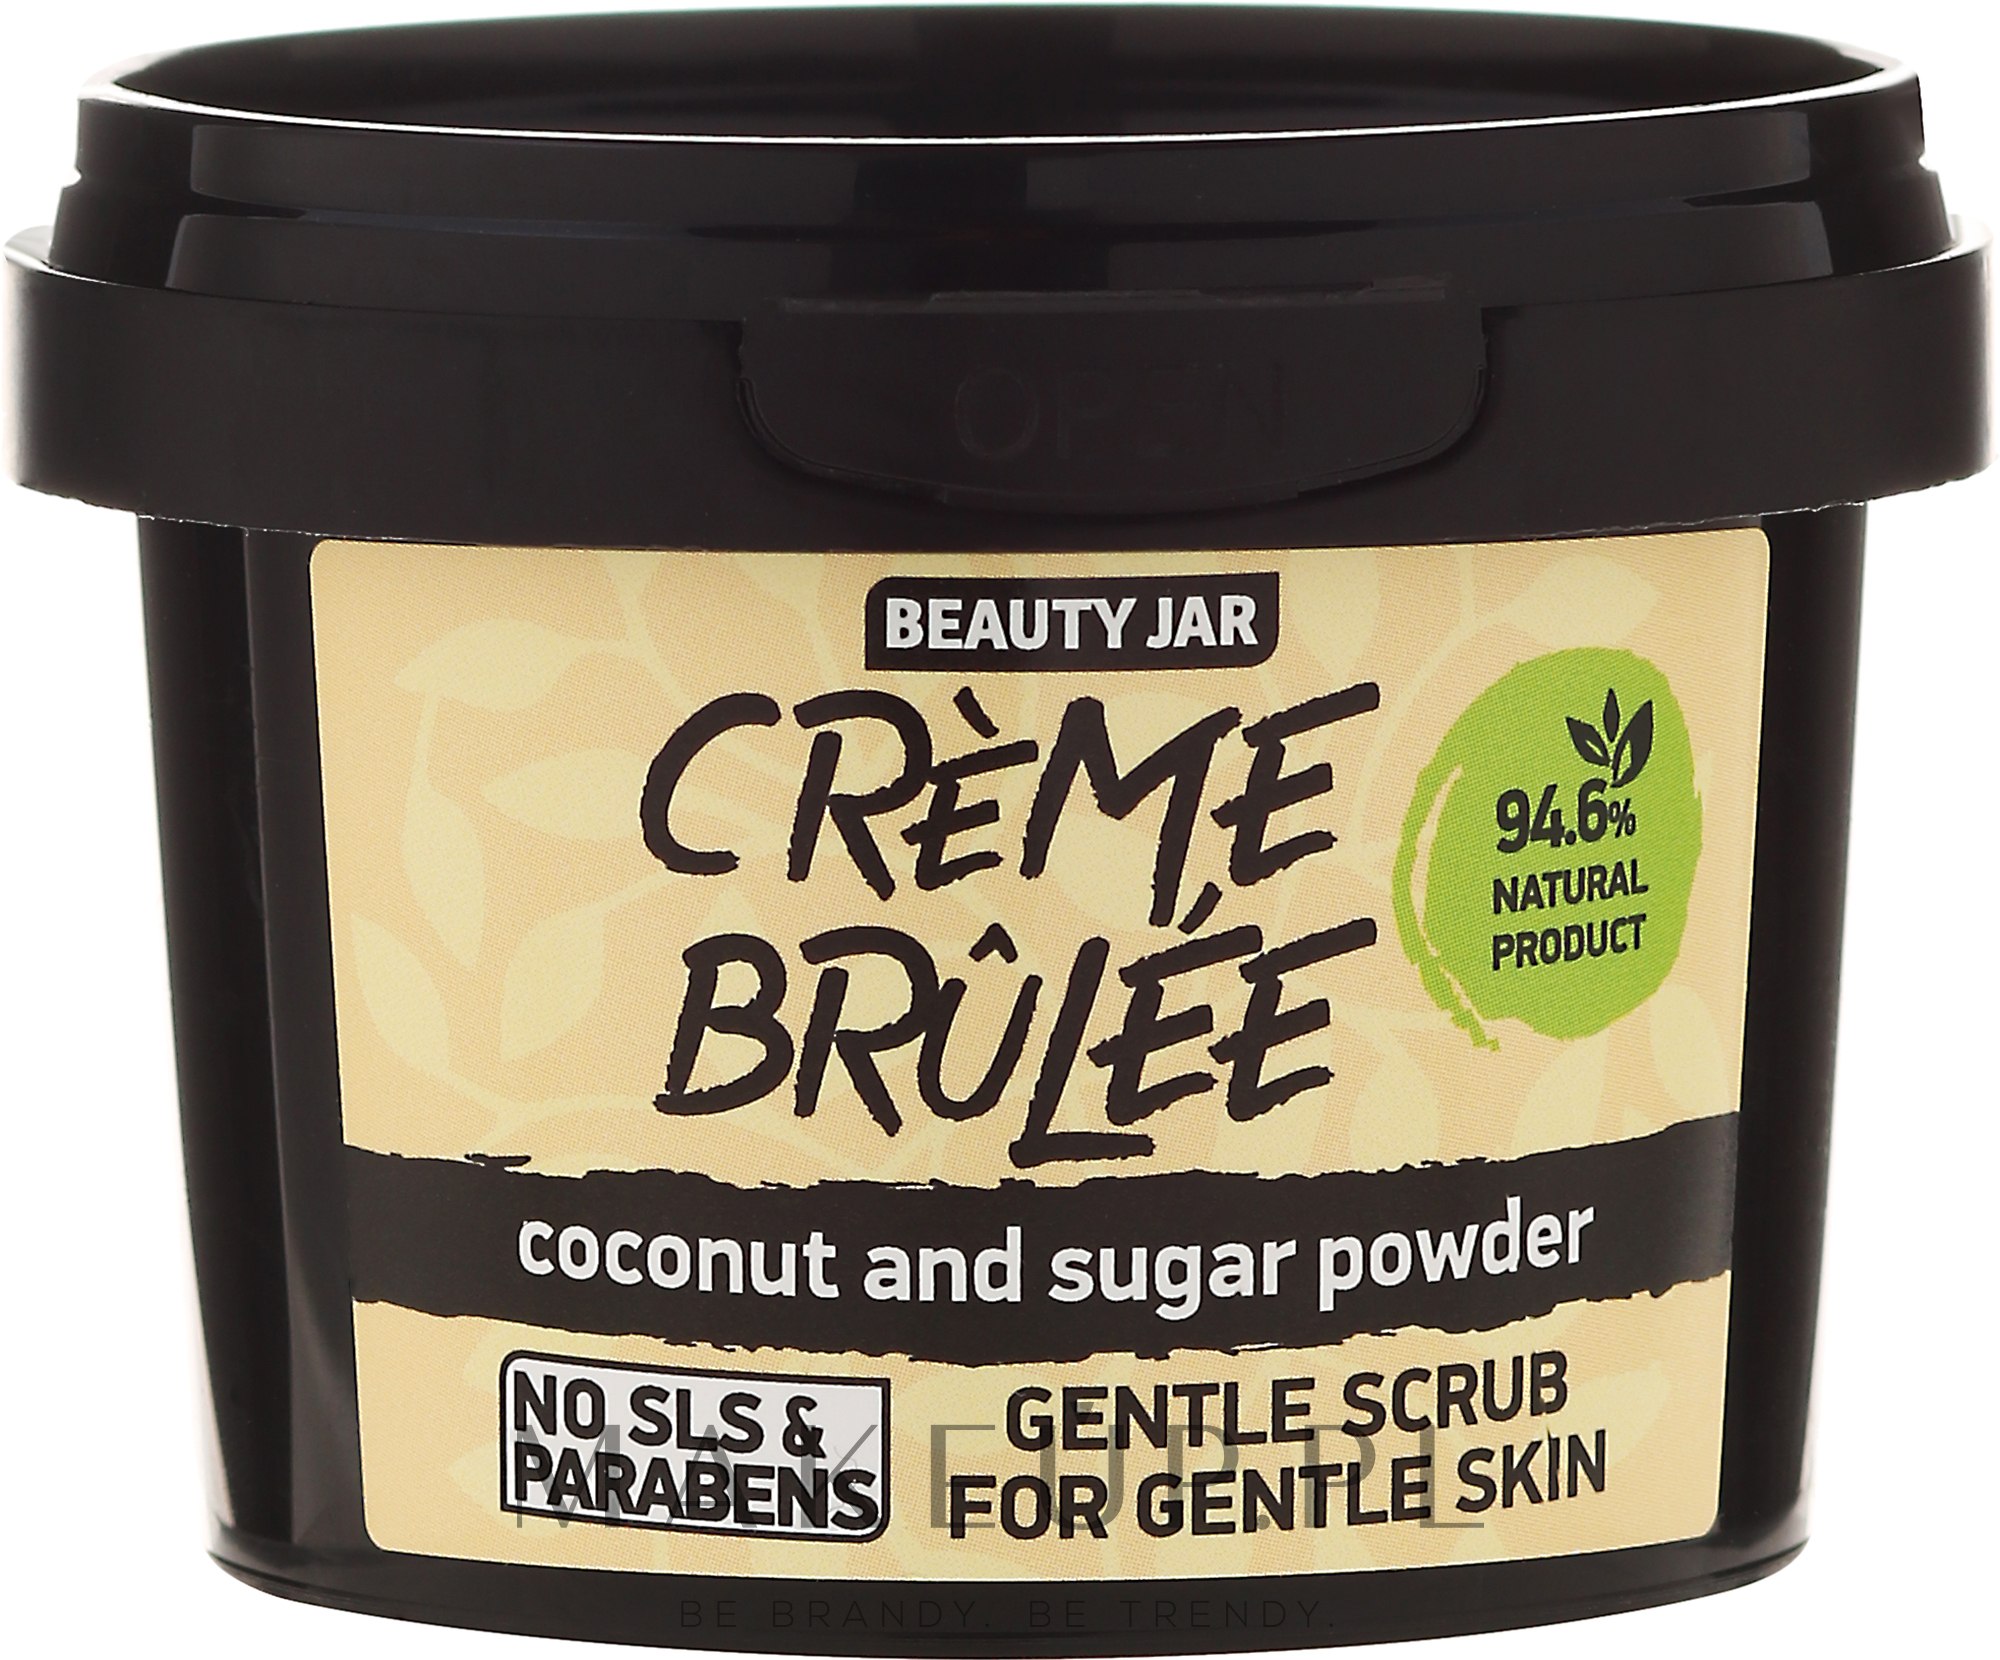 Delikatny scrub do twarzy do skóry delikatnej Crème brûlée - Beauty Jar Coconut And Sugar Powder Gentle Scrub — Zdjęcie 120 g